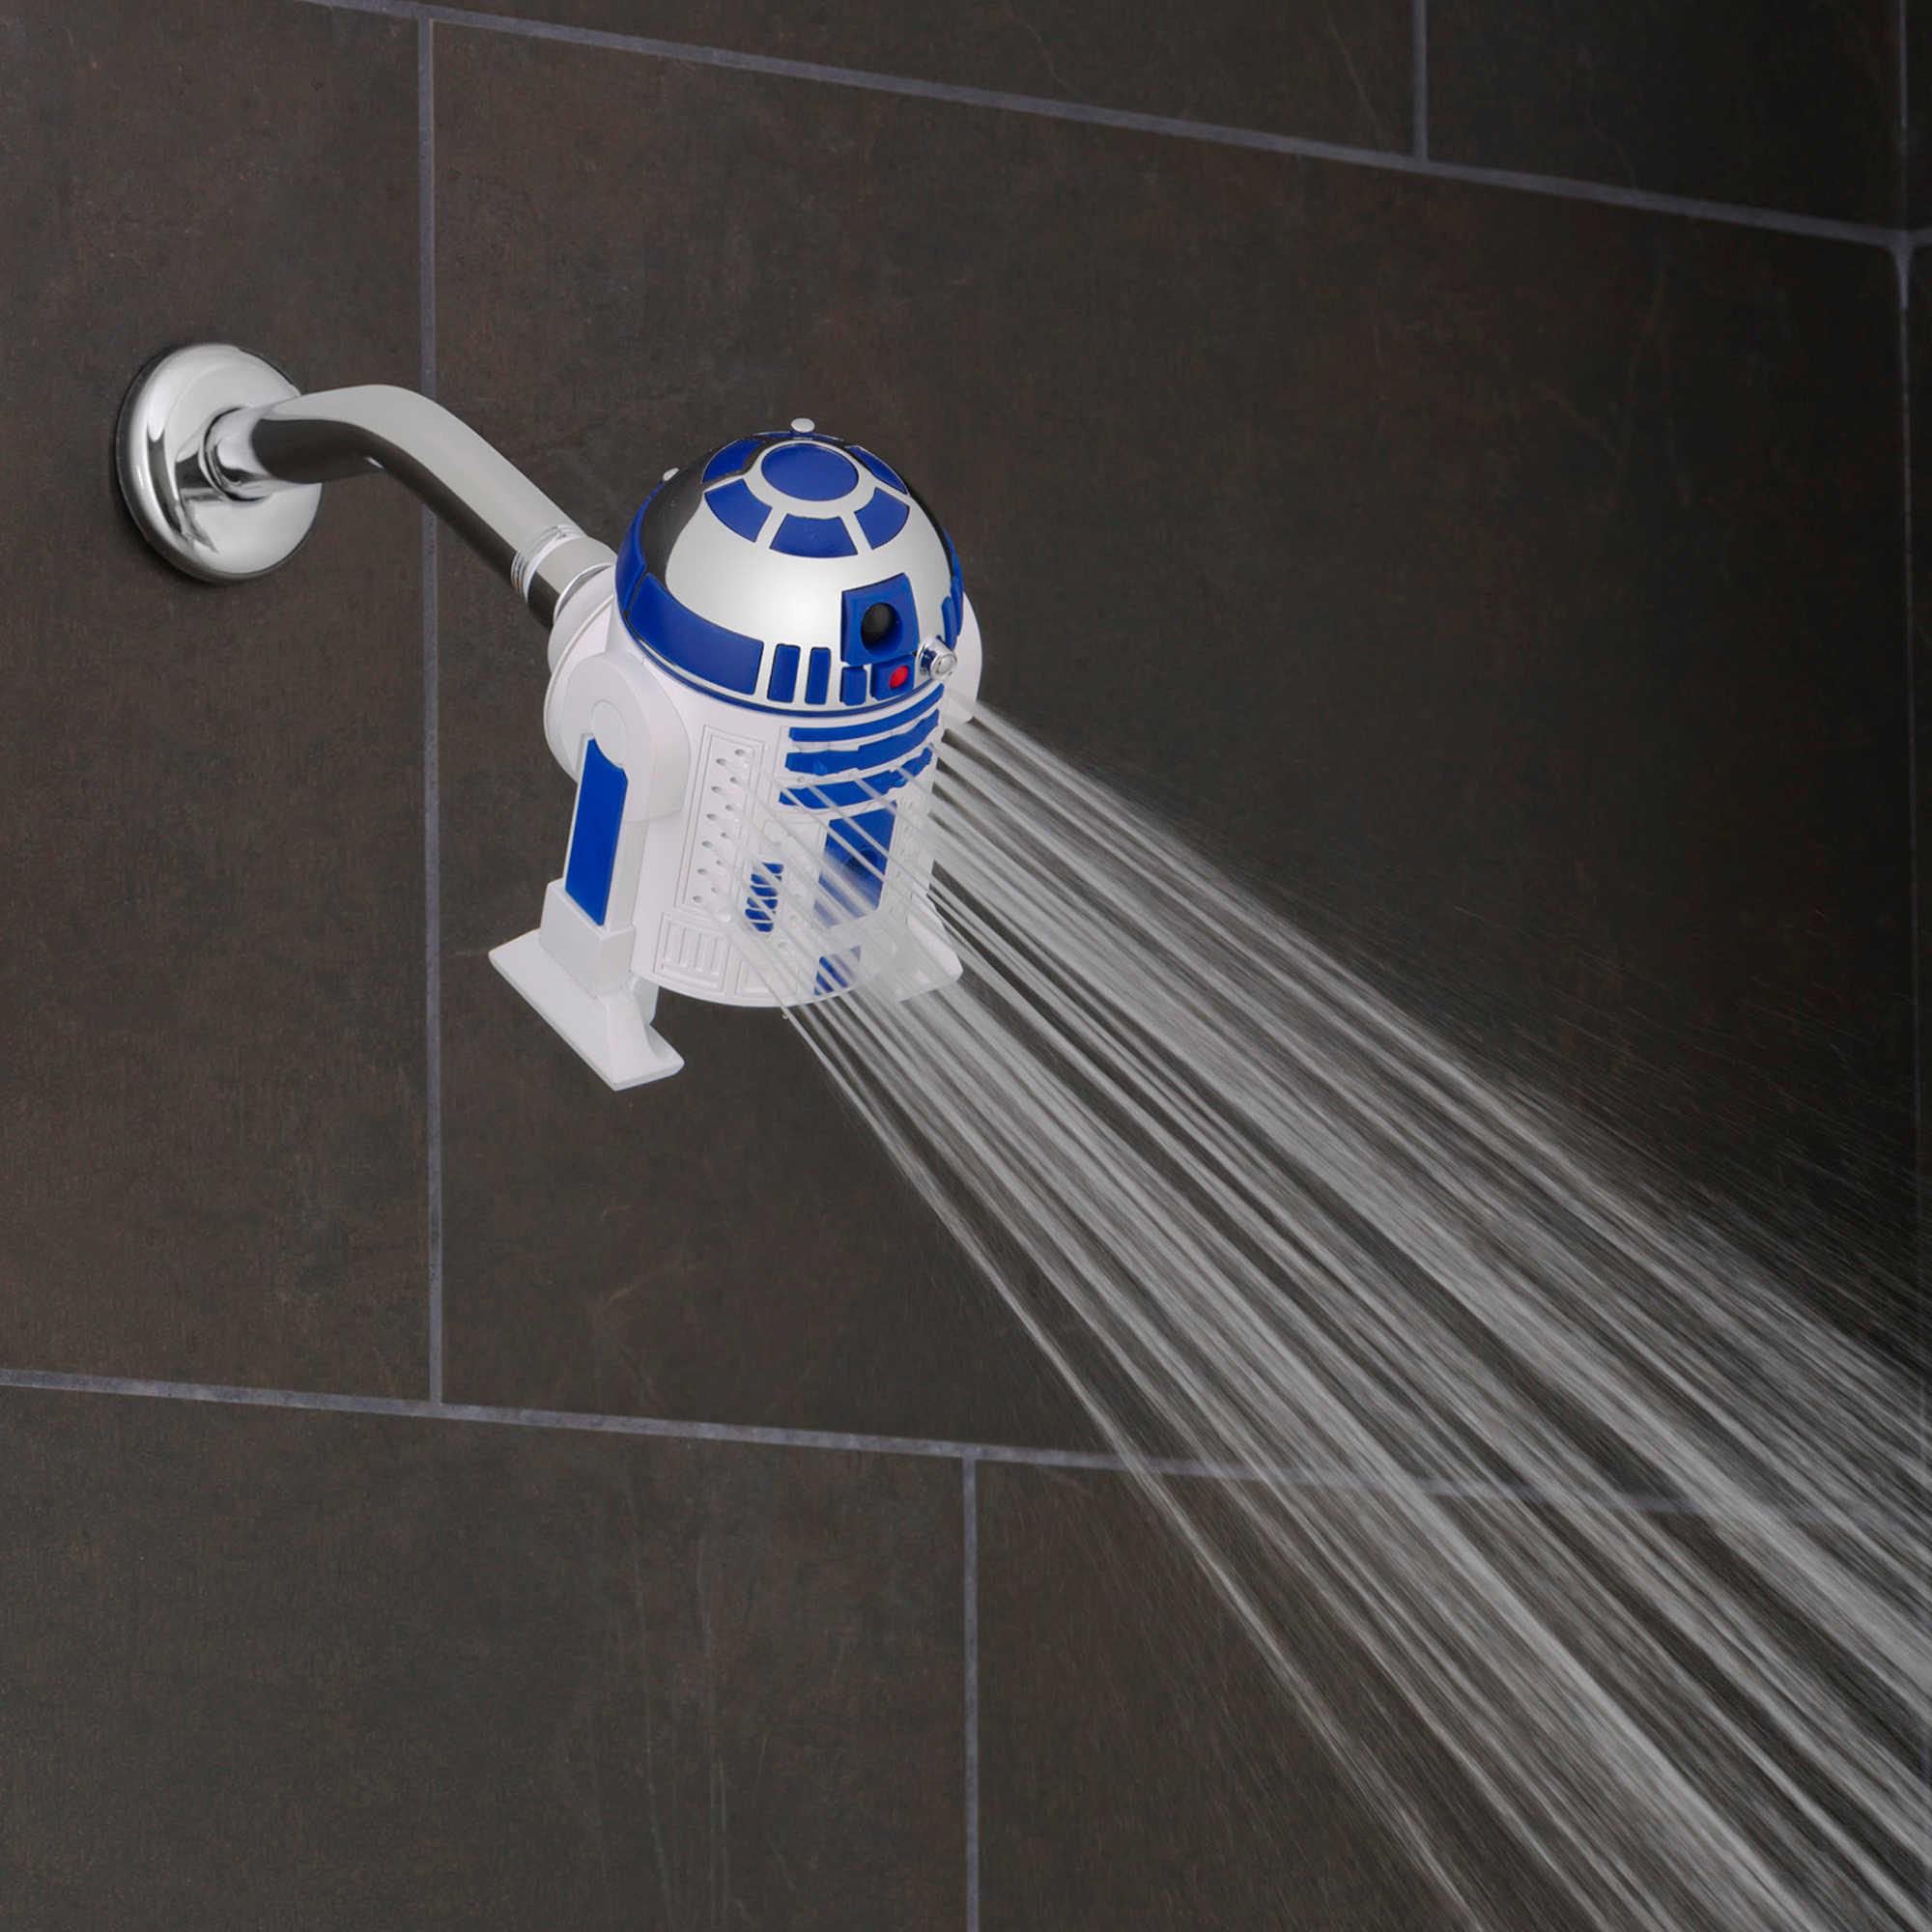 Esses chuveiros de Star Wars garantem que a Força da limpeza esteja com você